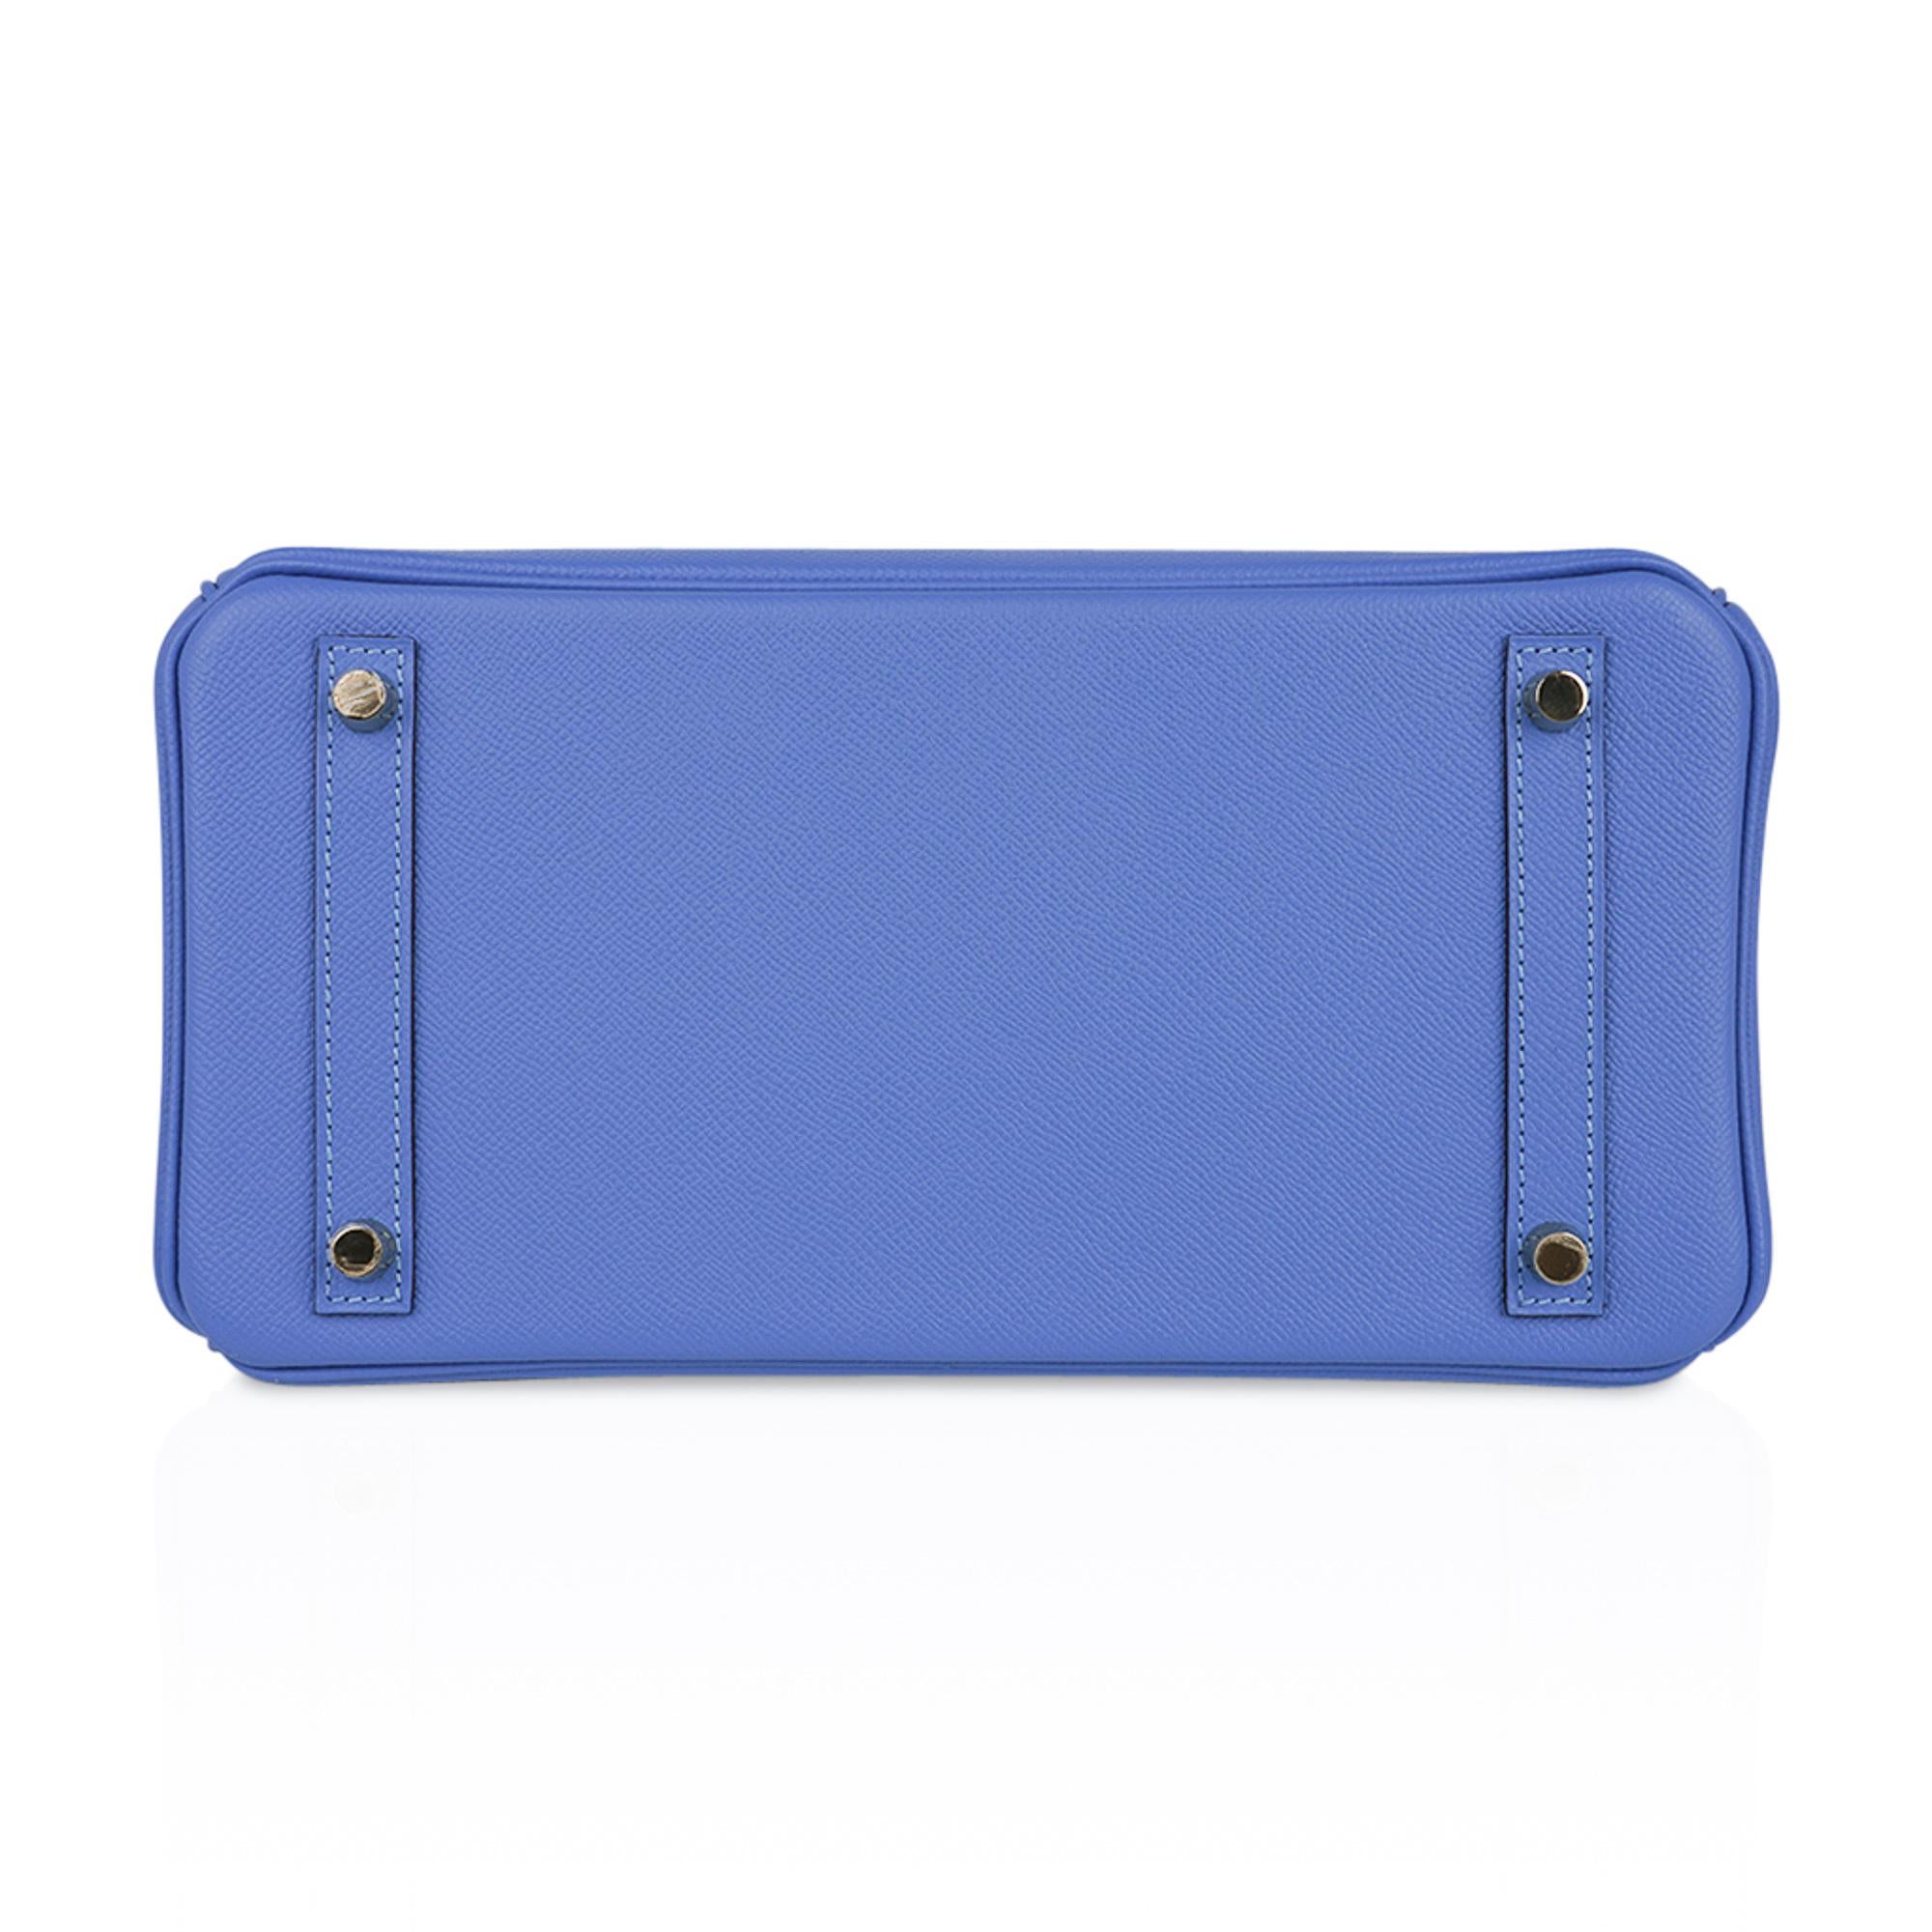 Hermes Birkin 30 Blue Paradis Bag Gold Hardware Epsom Leather For Sale 3